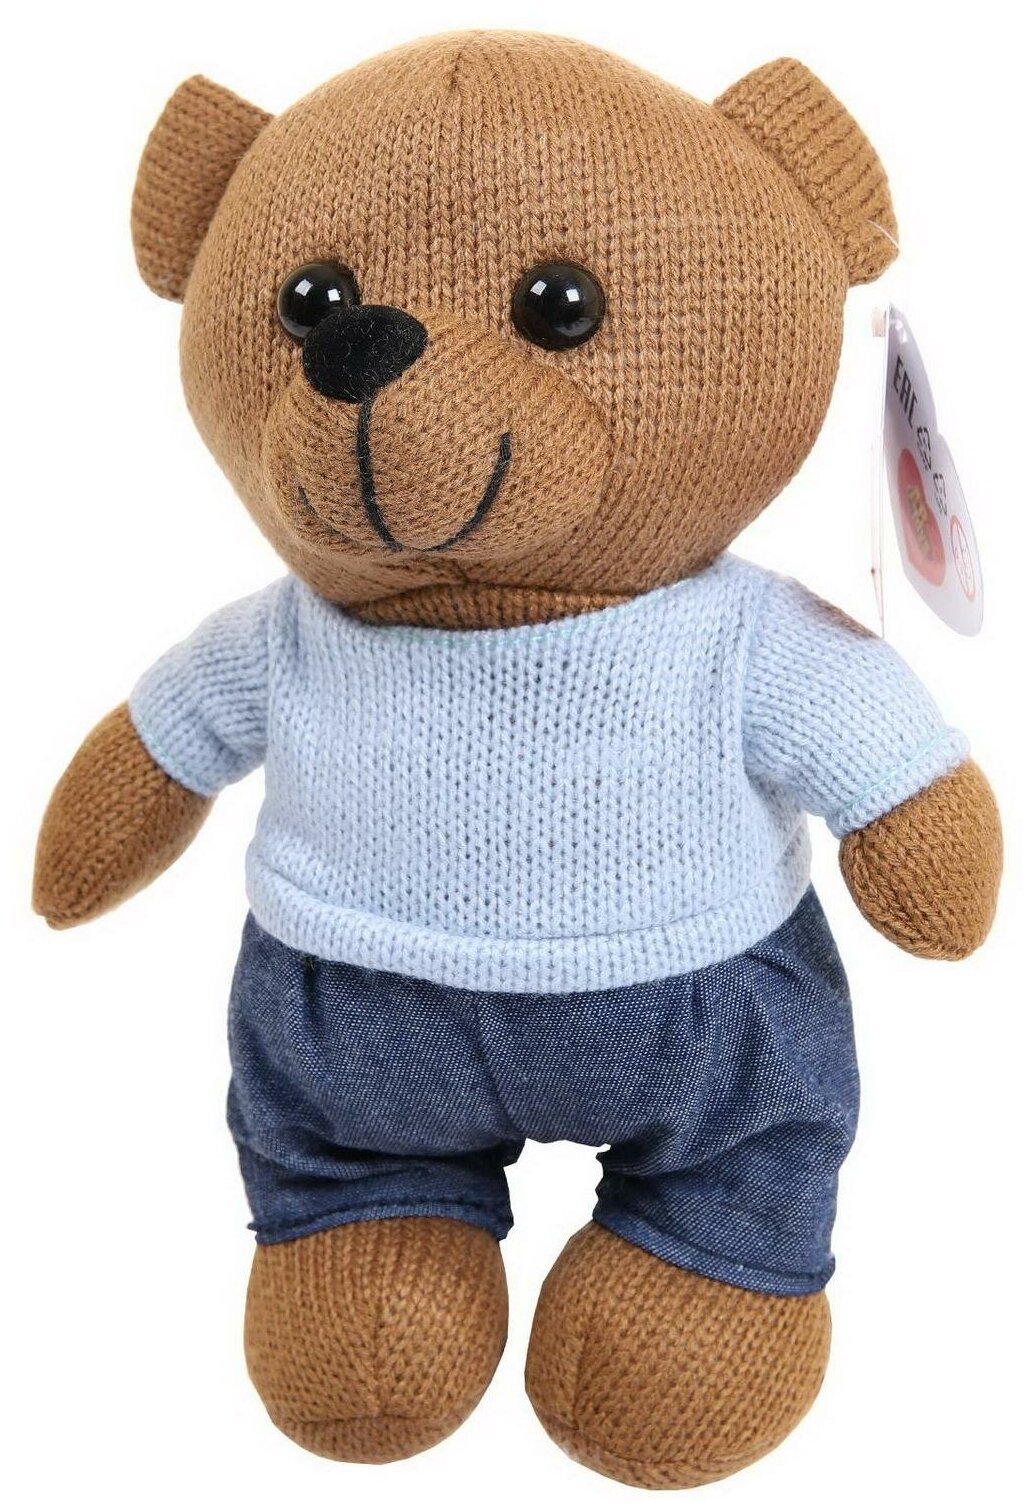 Мягкая игрушка Abtoys Knitted. Мишка мальчик вязаный, 22см в джинсах и свитере